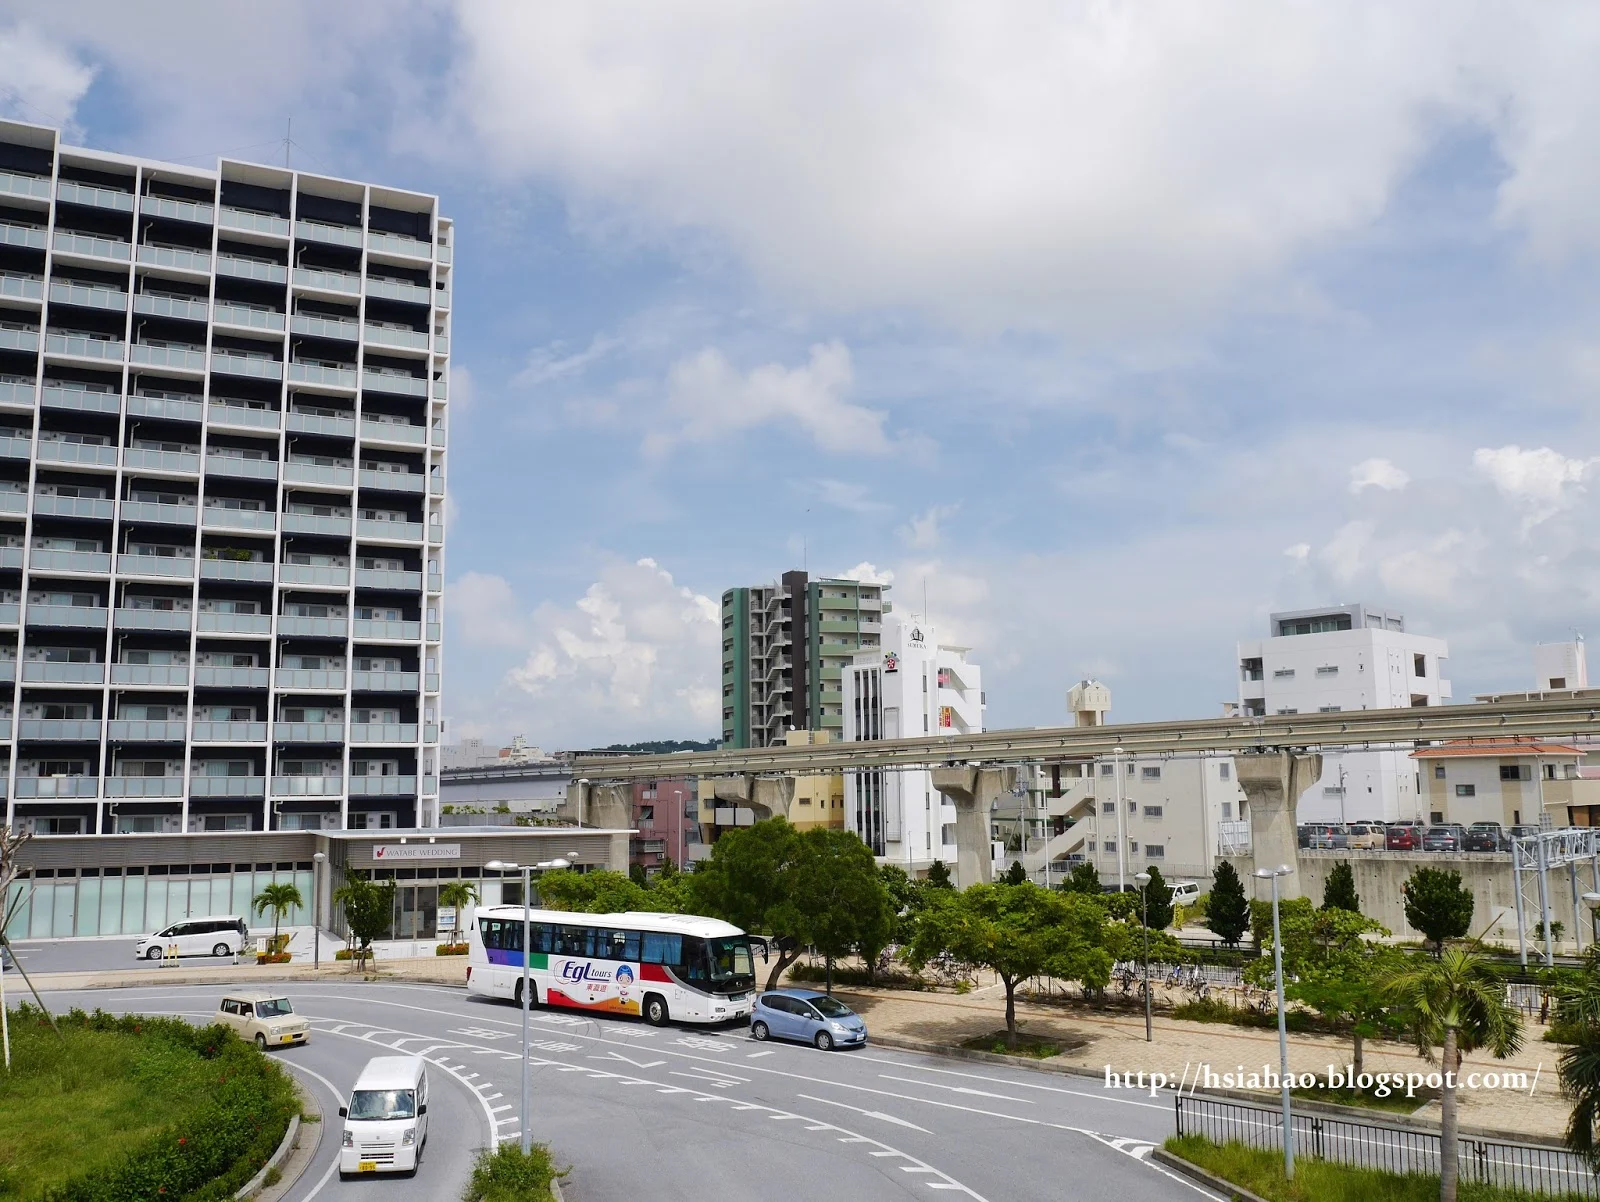 沖繩-電車交通-單軌電車-那霸電車-新都心-自由行-旅遊-旅行-Okinawa-yui-rail- transport-train